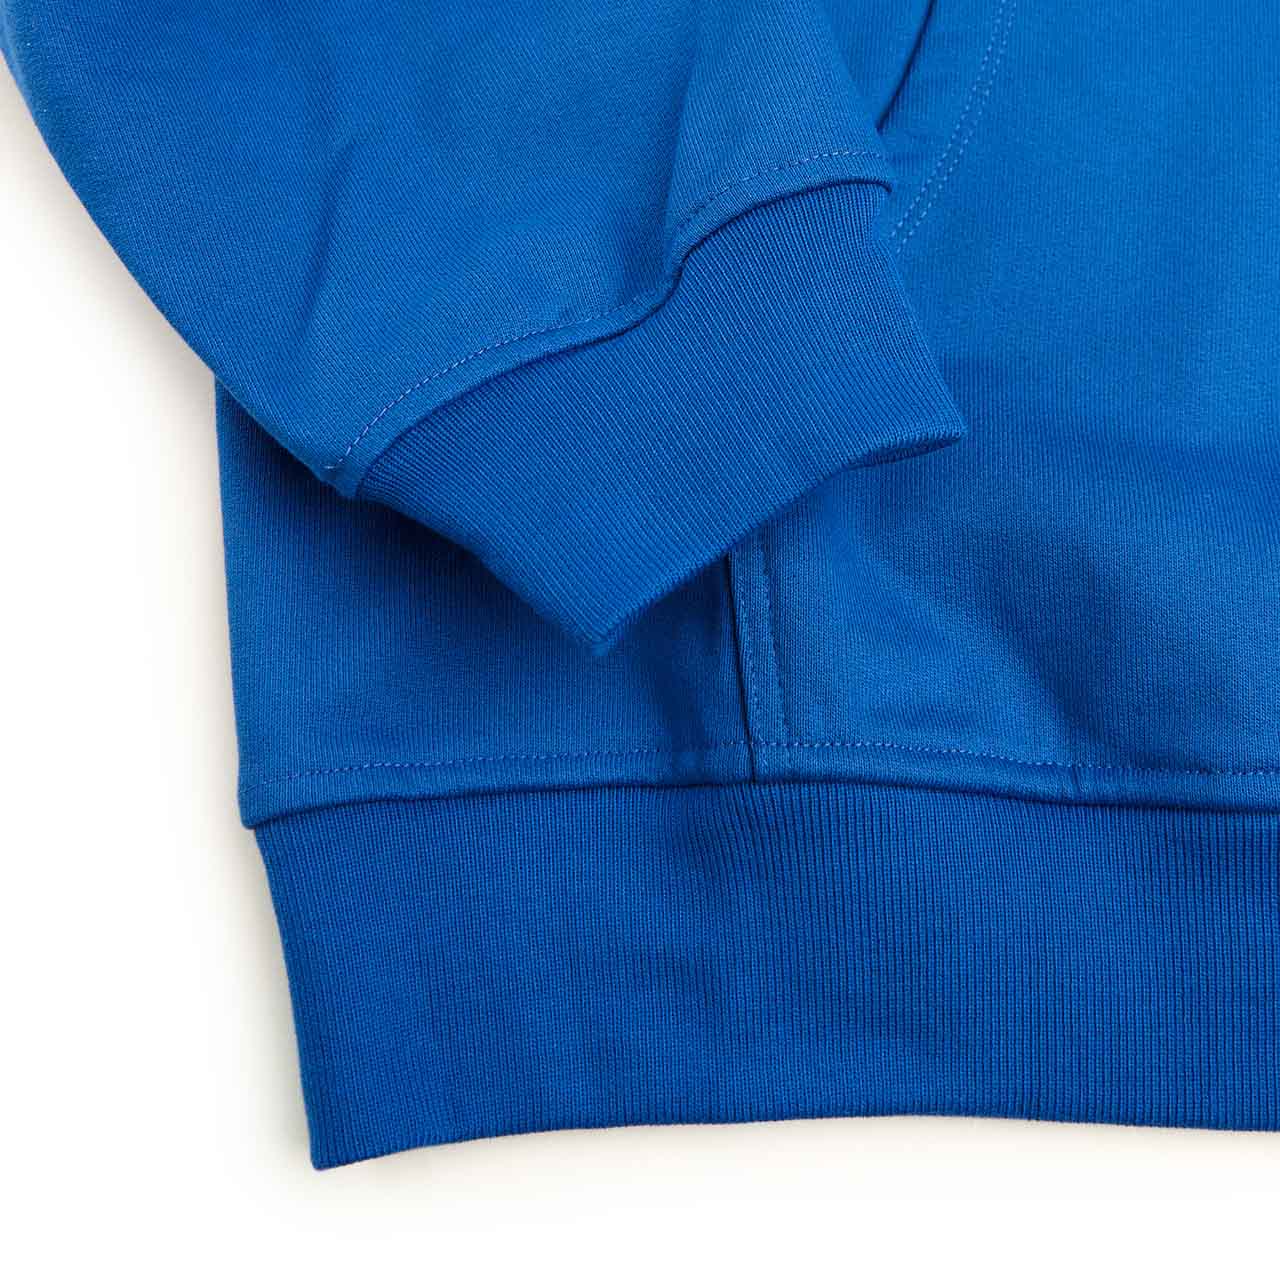 rassvet big logo hoodie (blue)